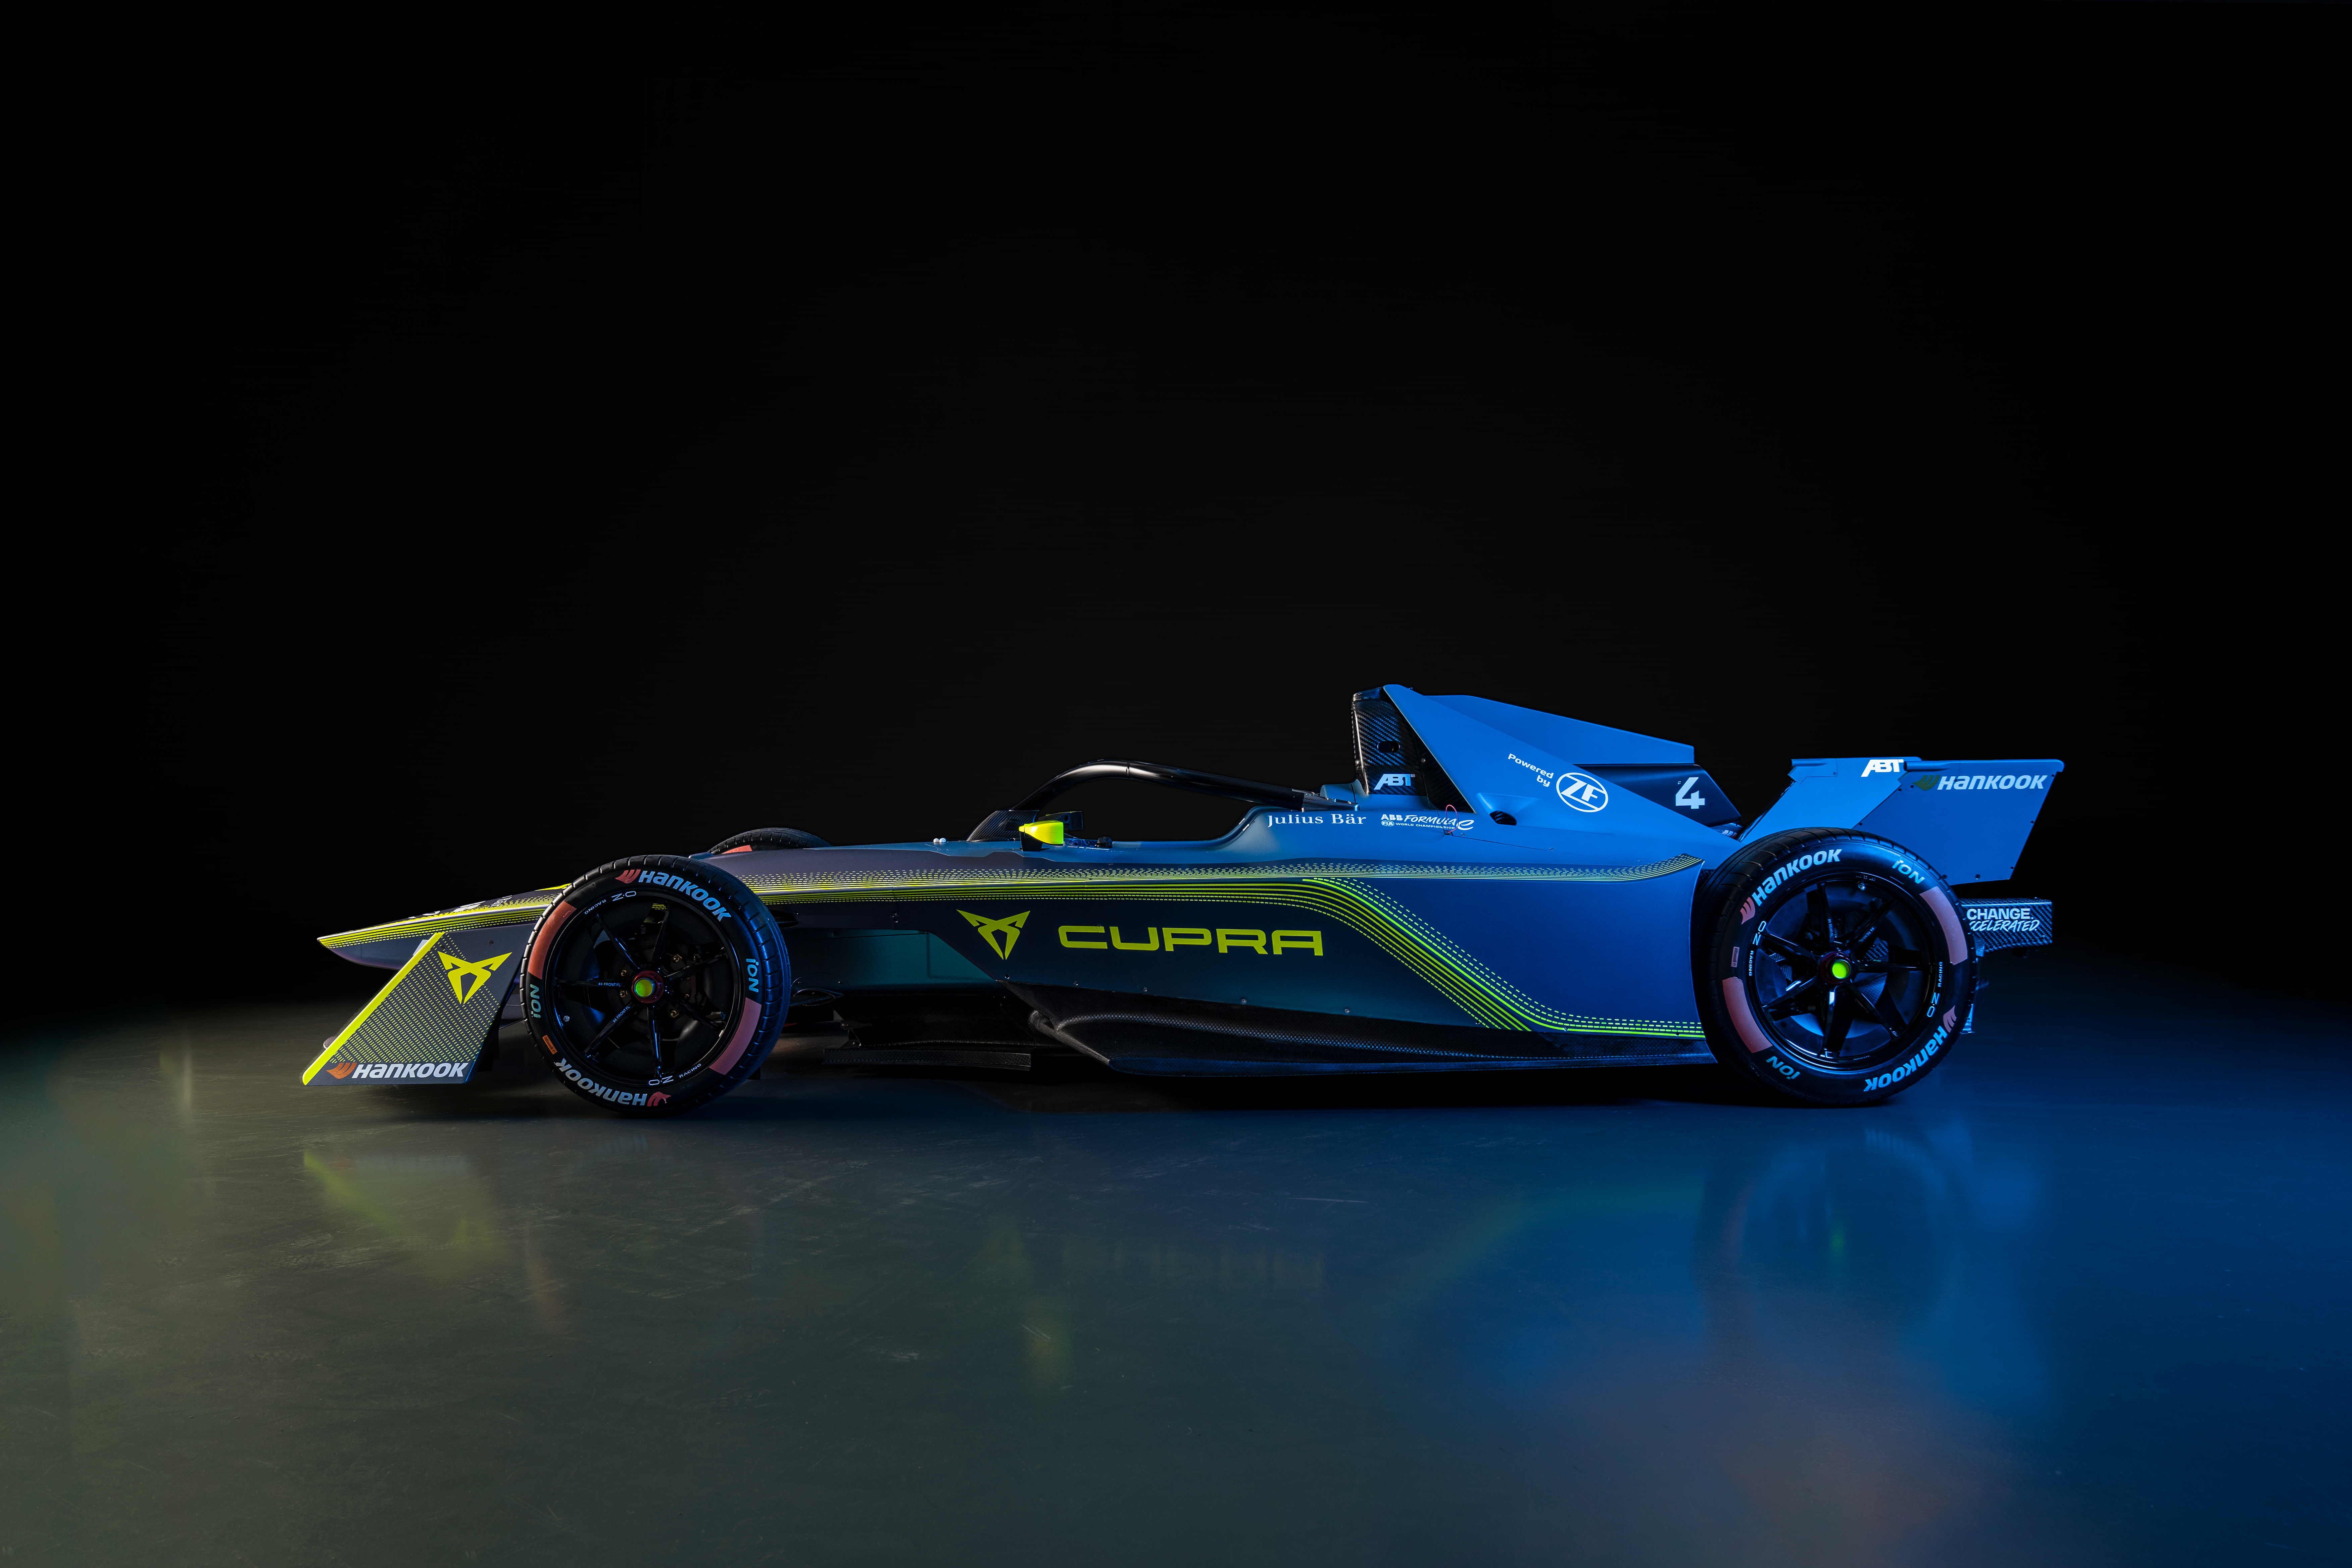 CUPRA refuerza su apuesta por la competición de vehículos eléctricos uniéndose a ABT para competir en Fórmula E